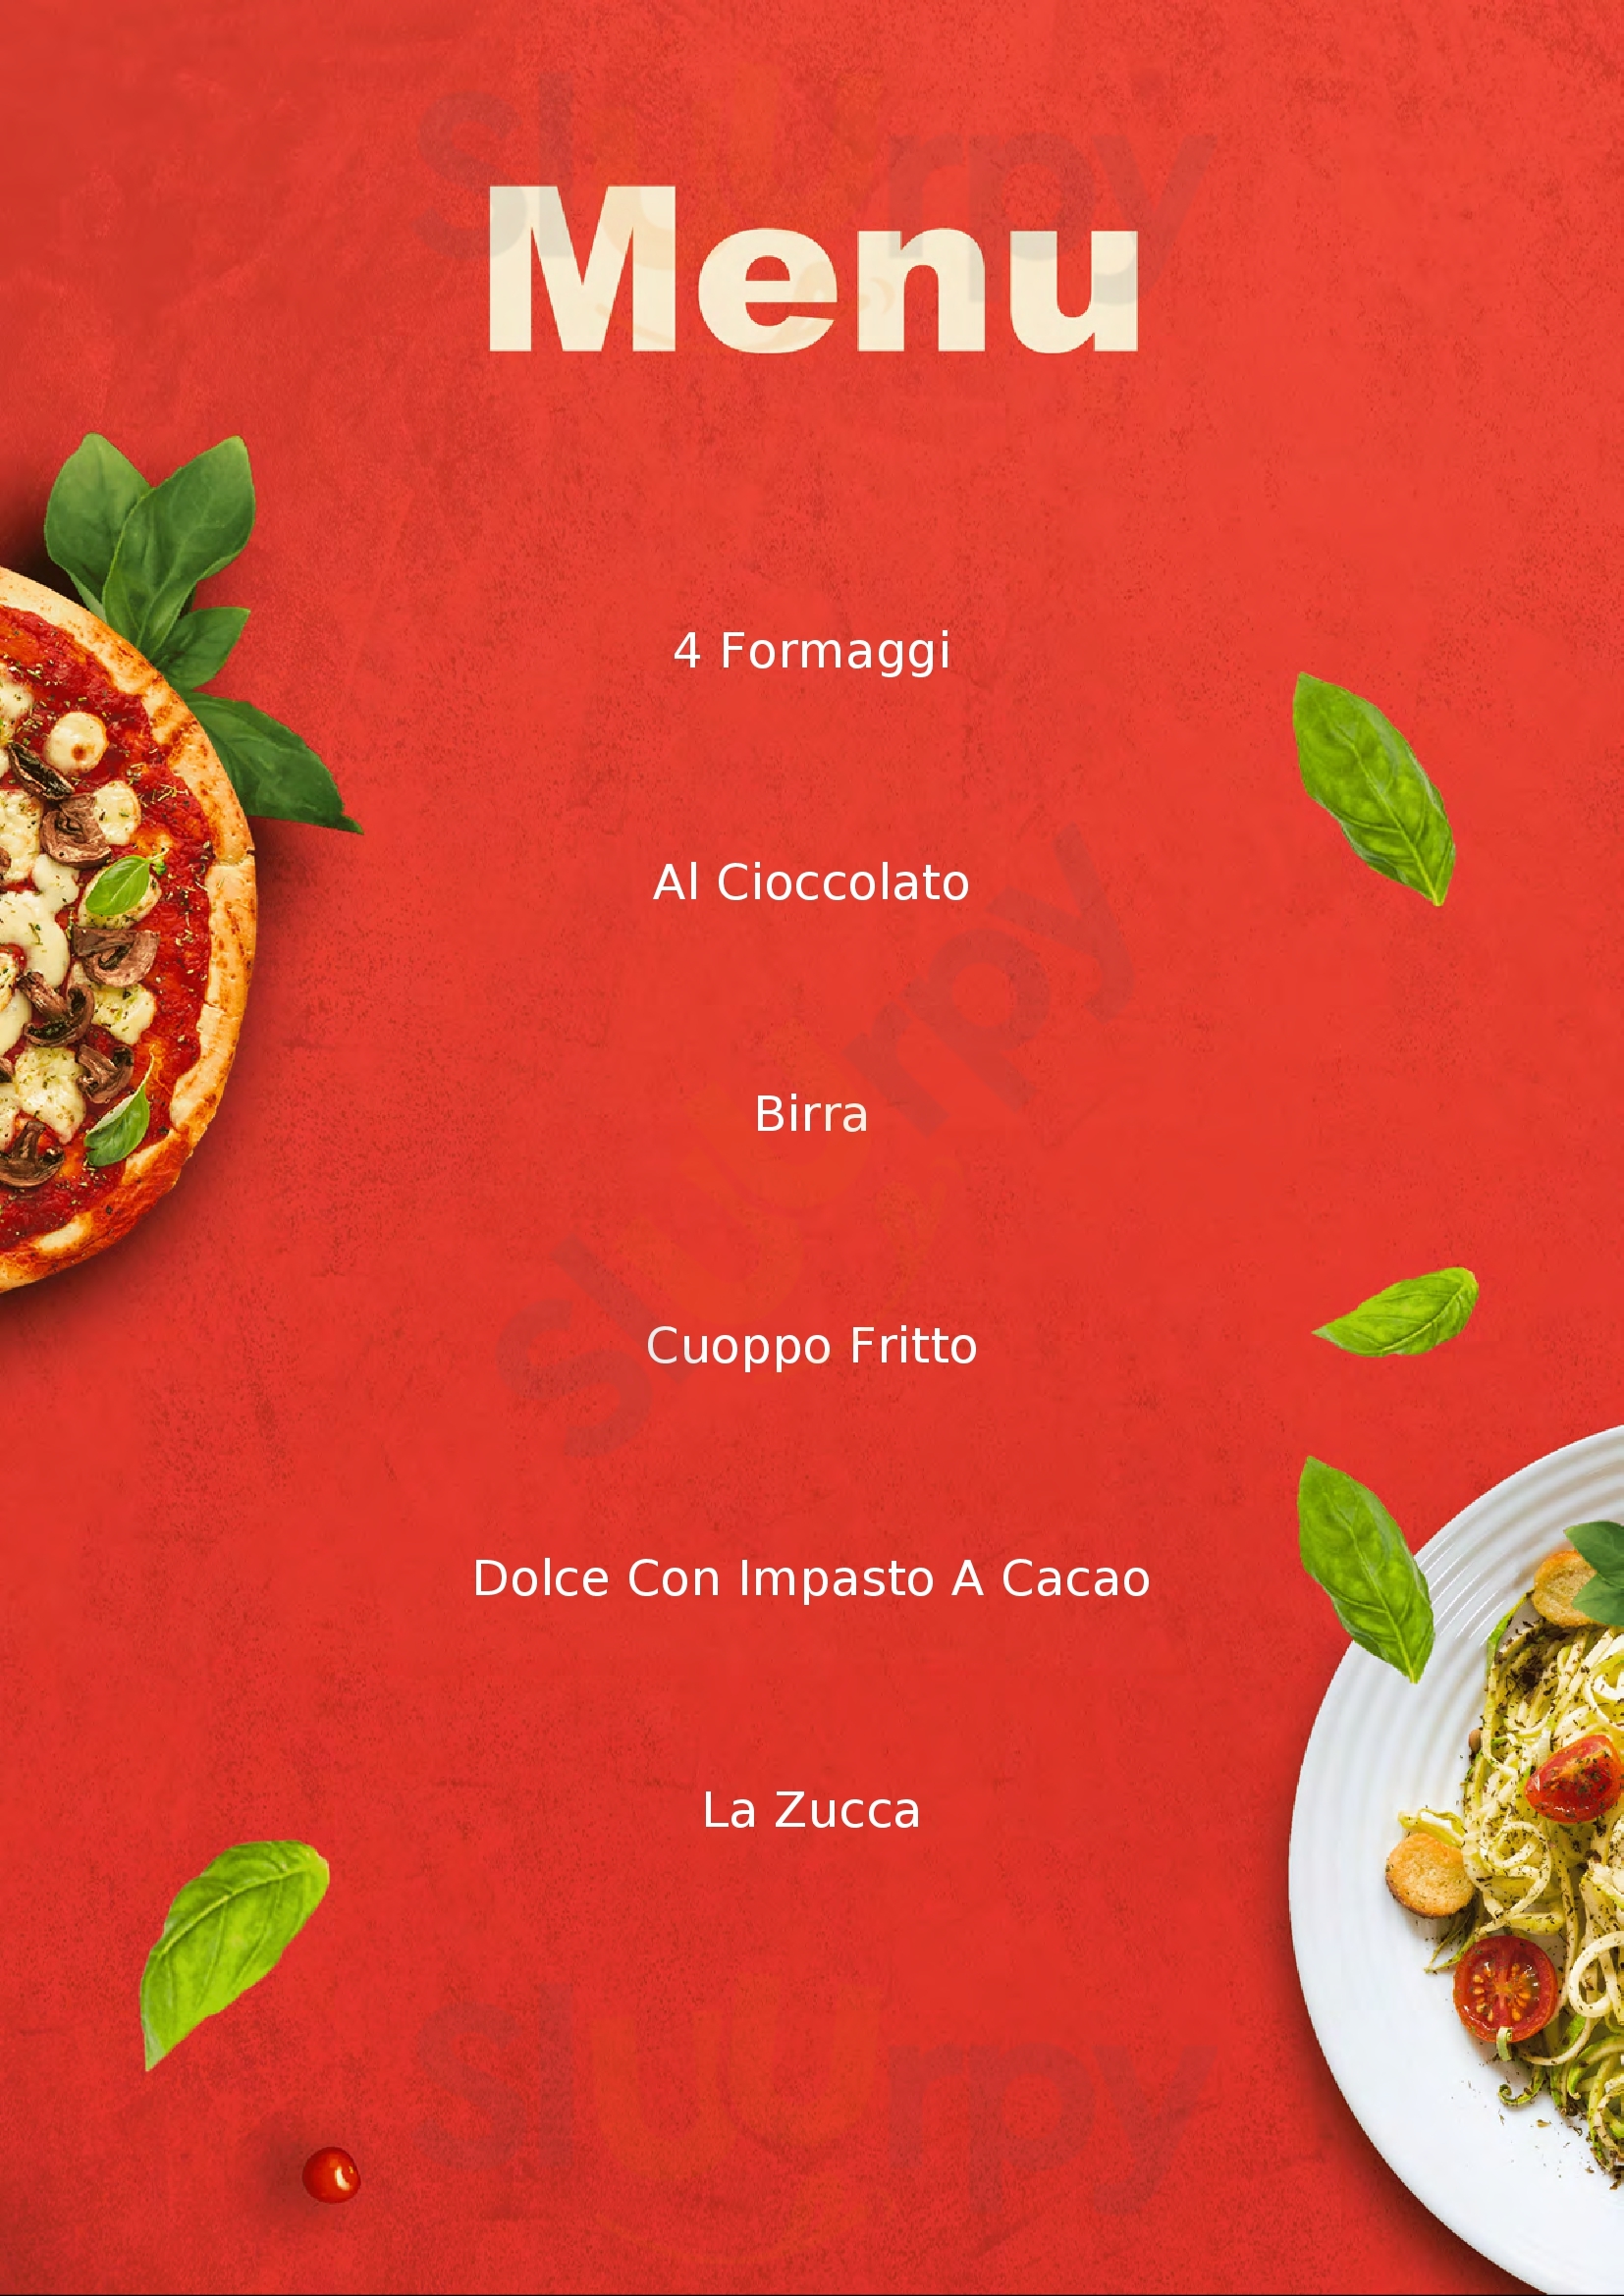 OroRosso Pizzeria Napoli menù 1 pagina